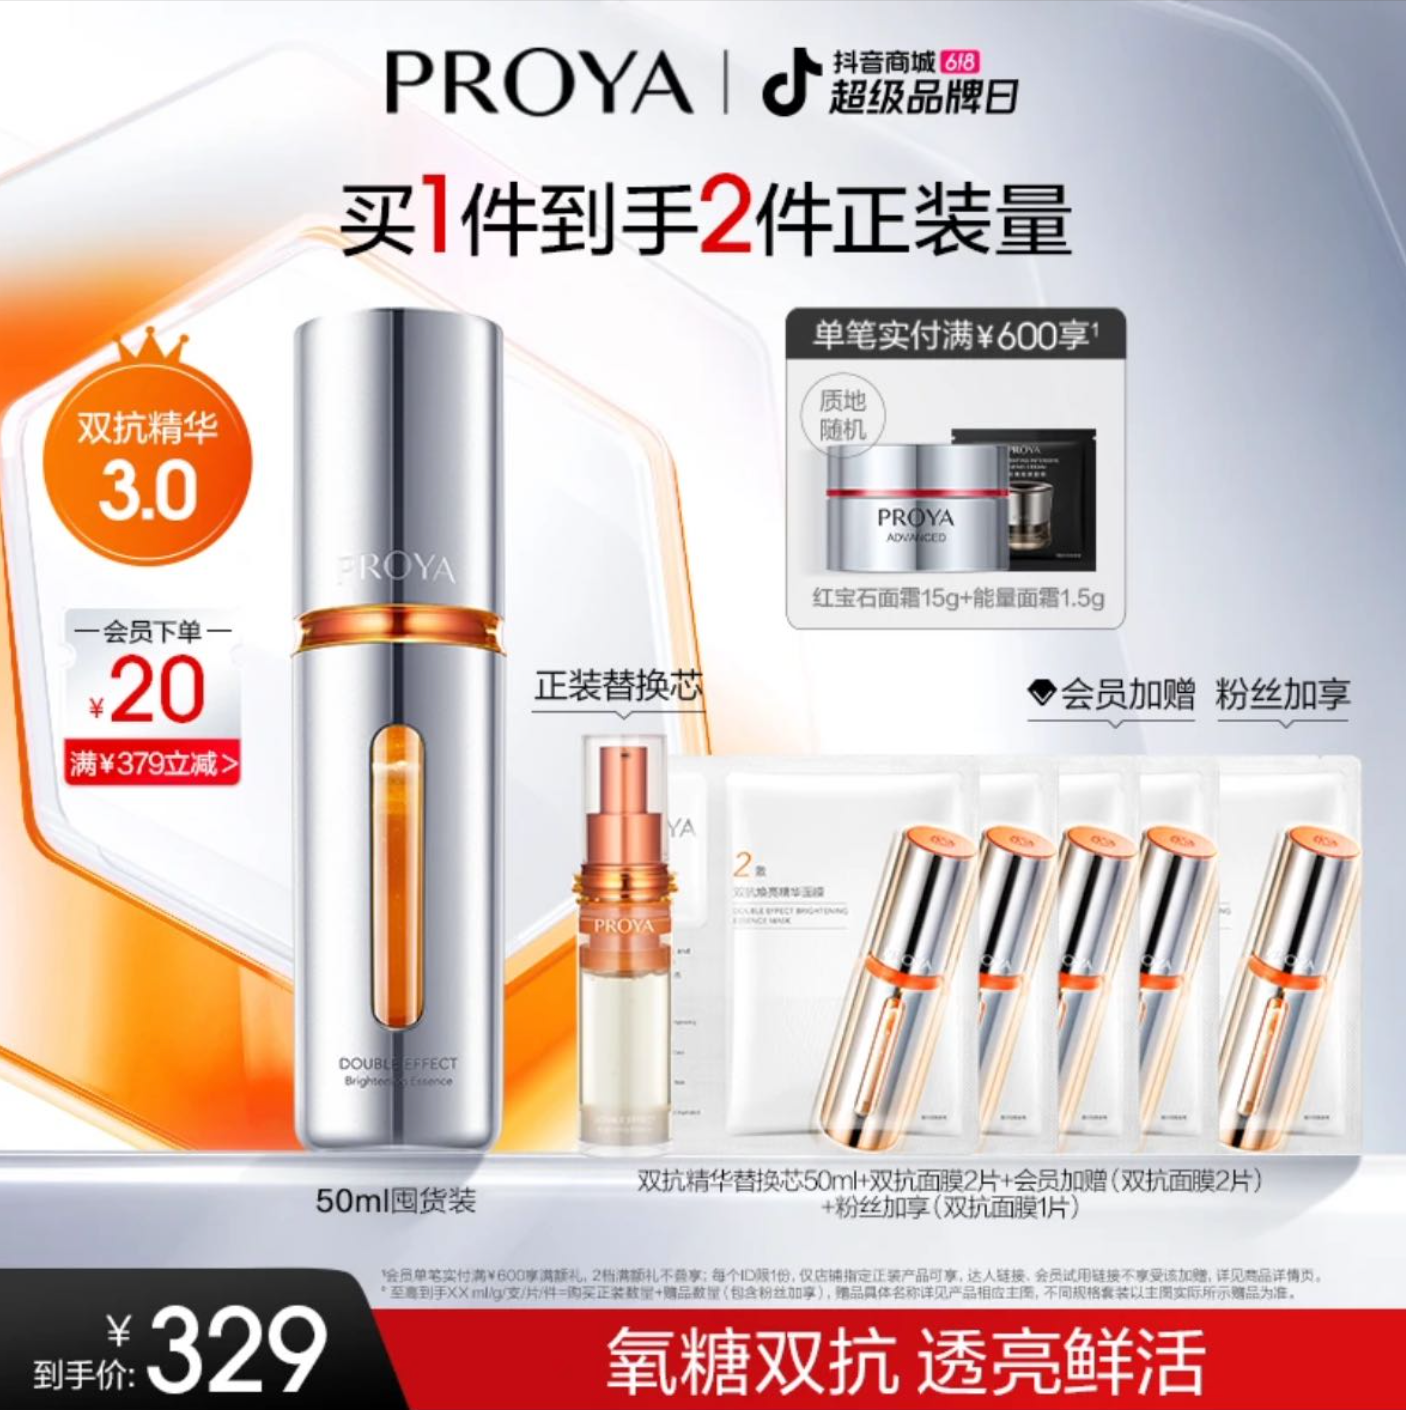 Proya's promotion on Douyin. Image: Douyin